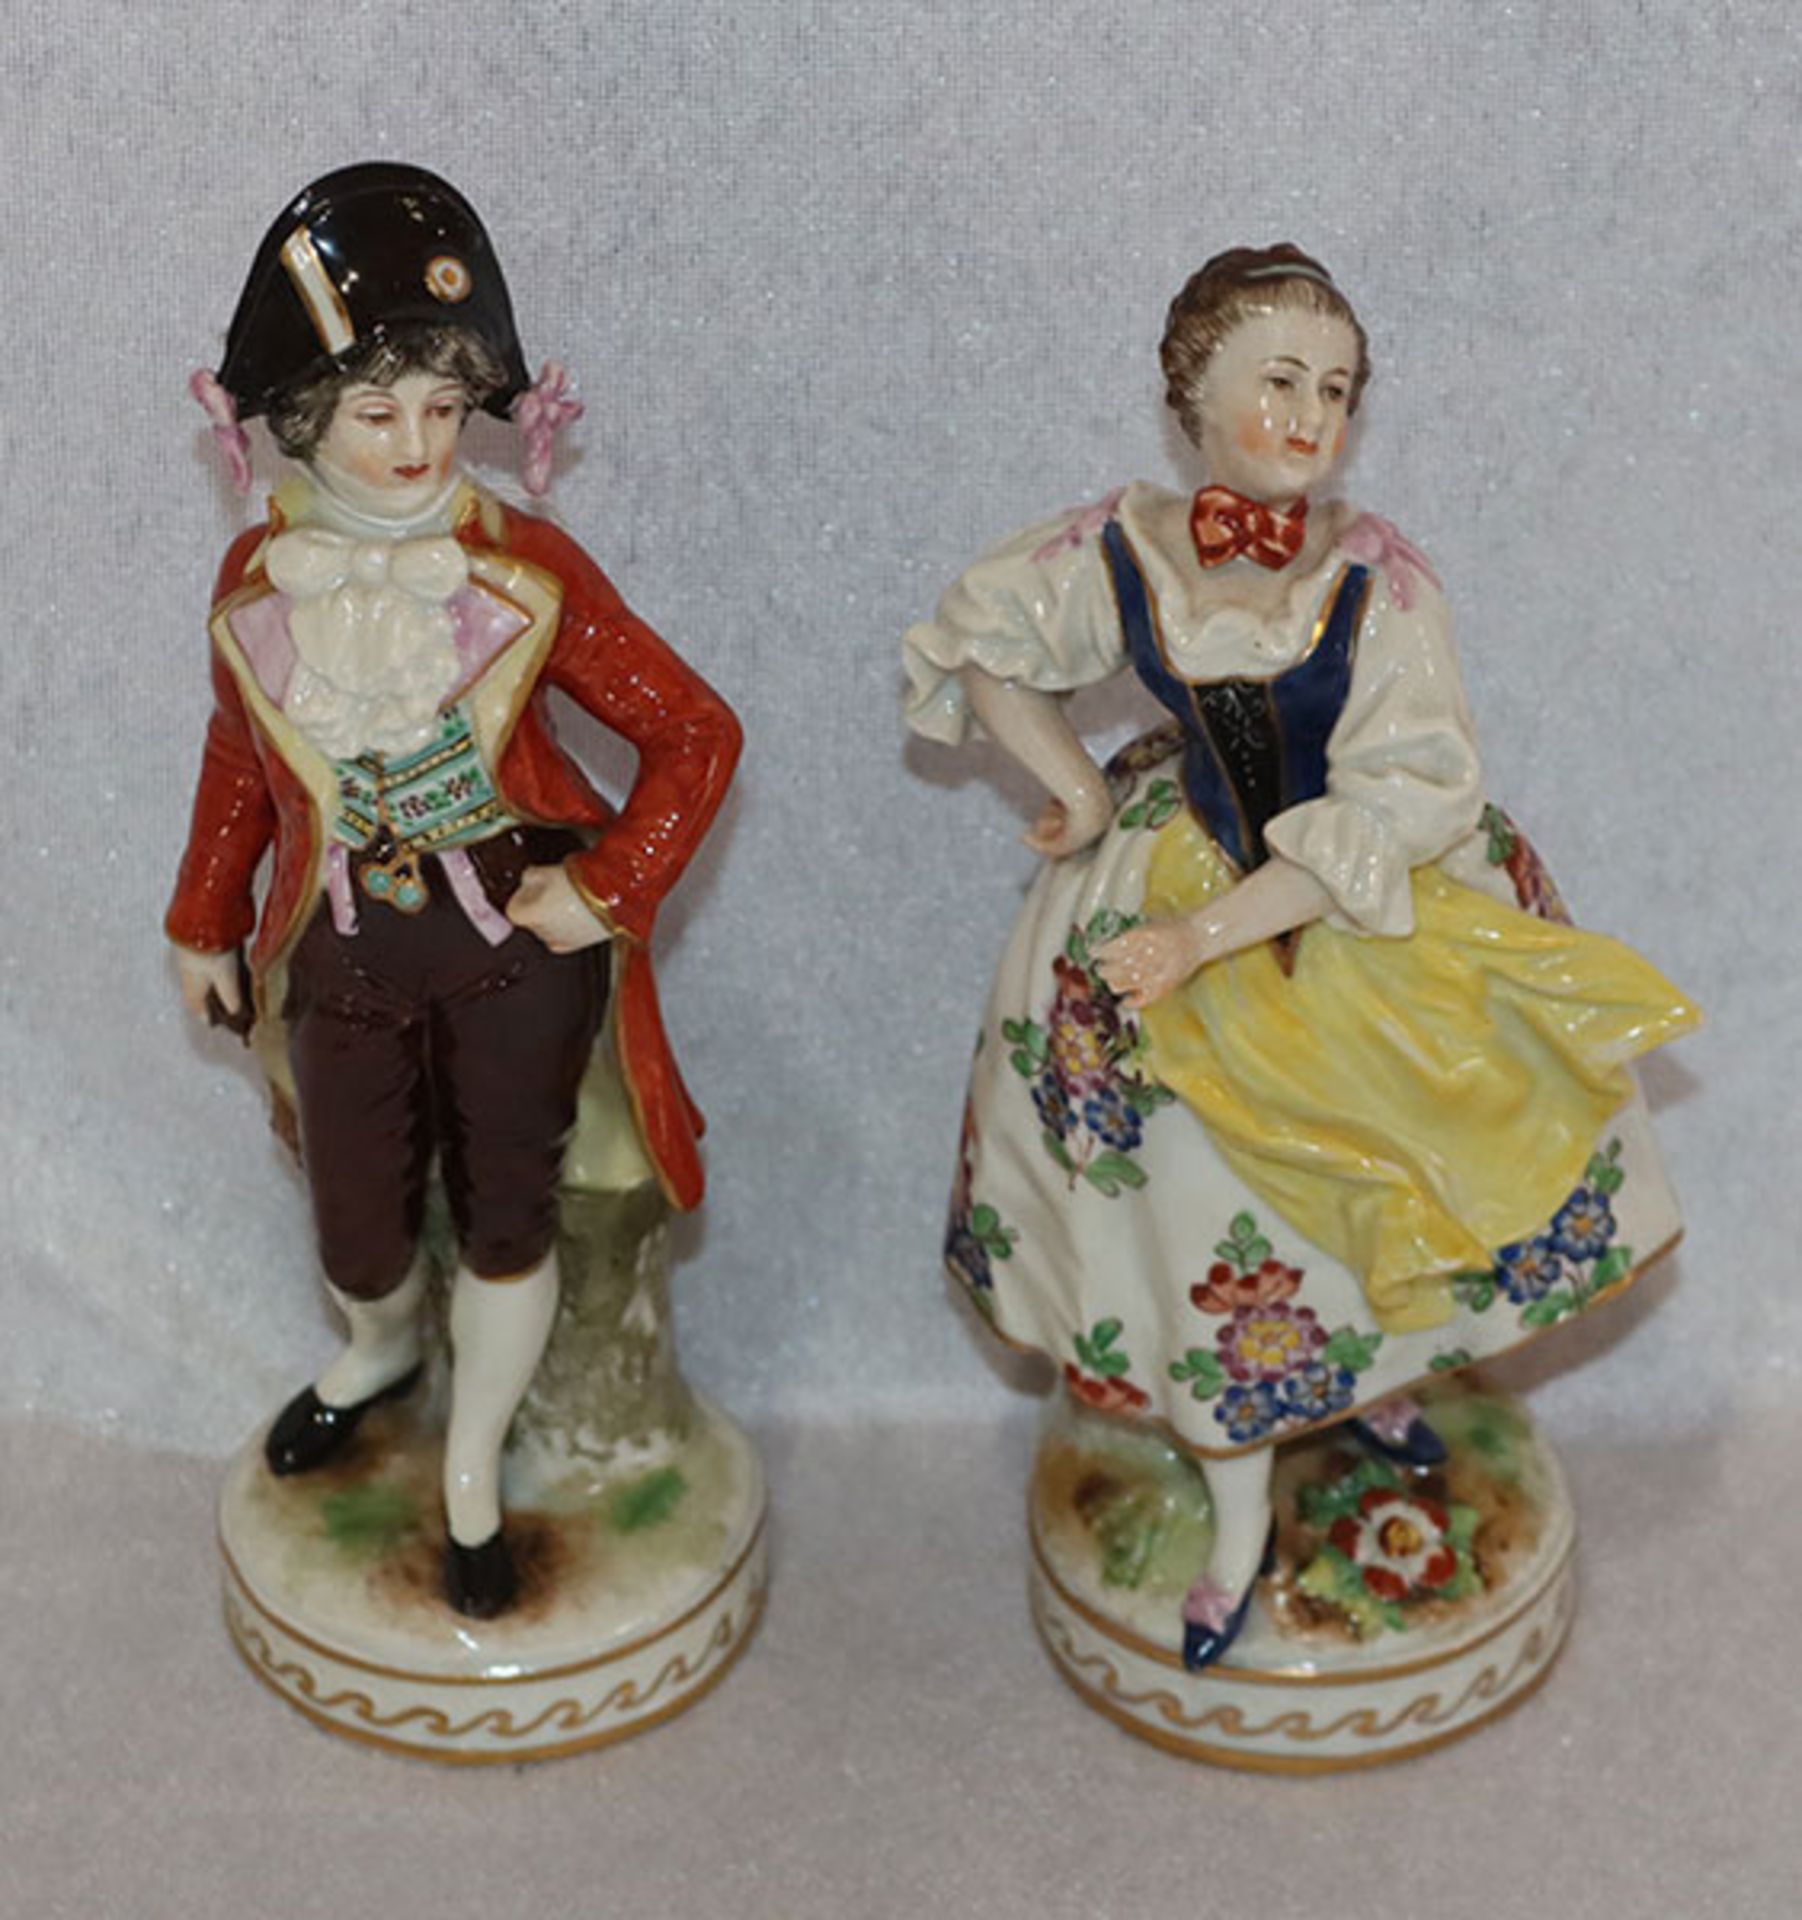 Porzellan Figuren 'Mann und Frau', farbig bemalt, beschädigt, H 18,5 cm